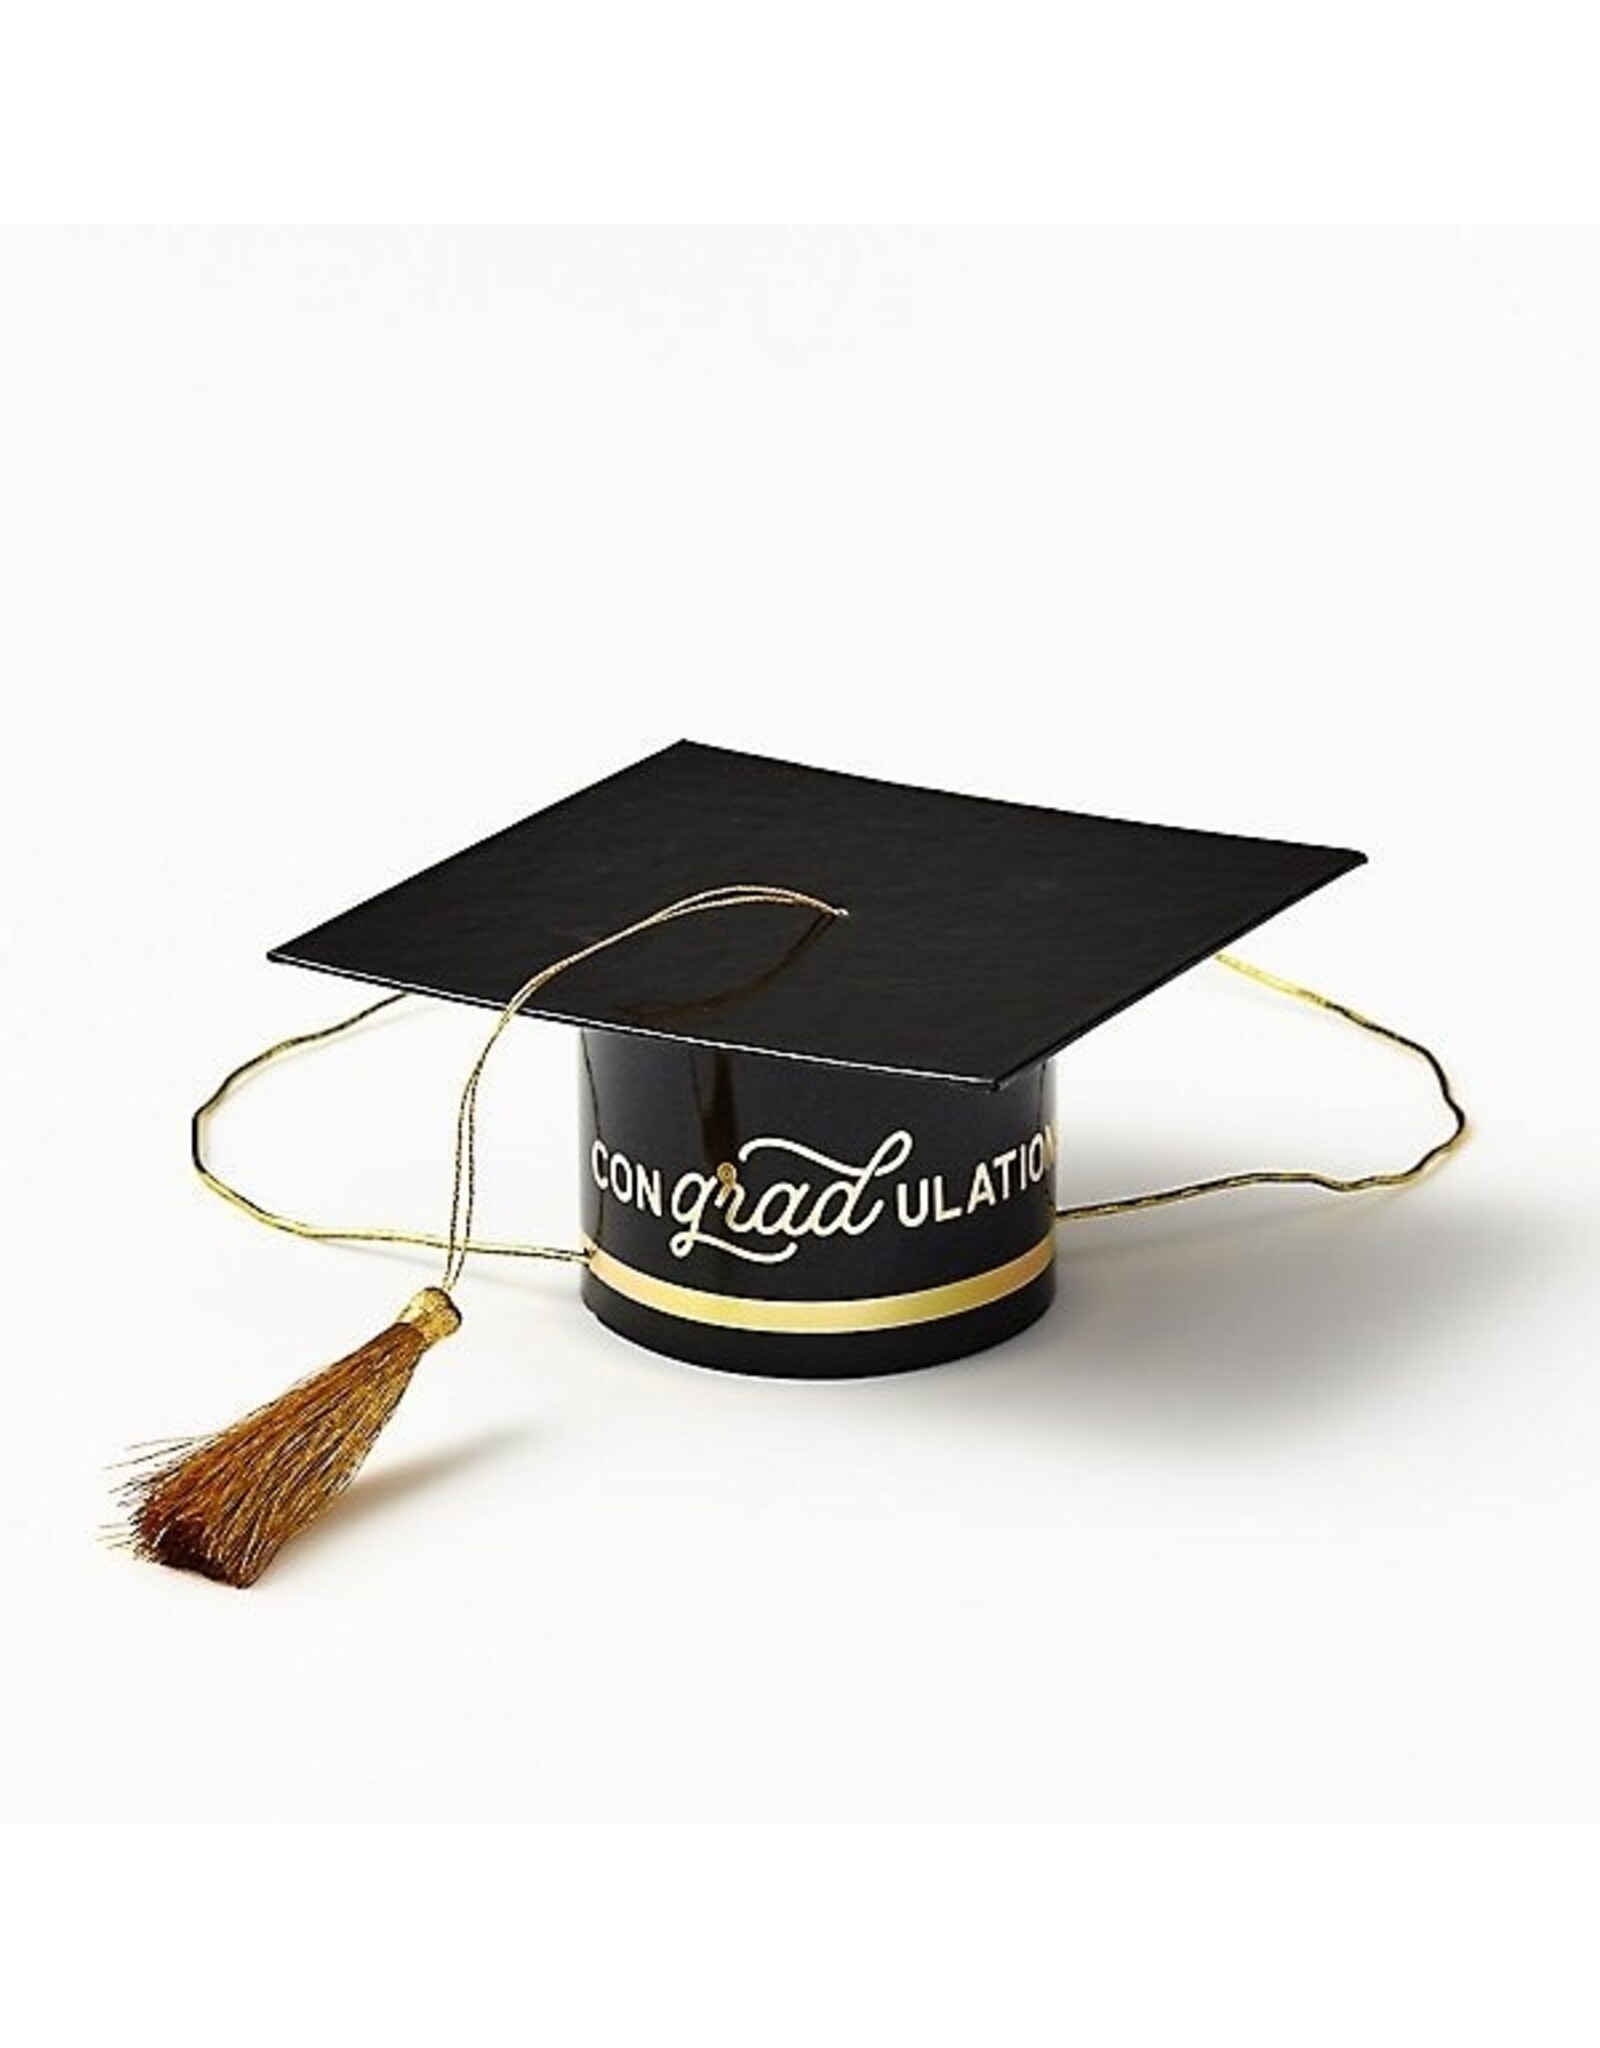 Paper Source Mini Graduation Cap Party Hats Set of 4